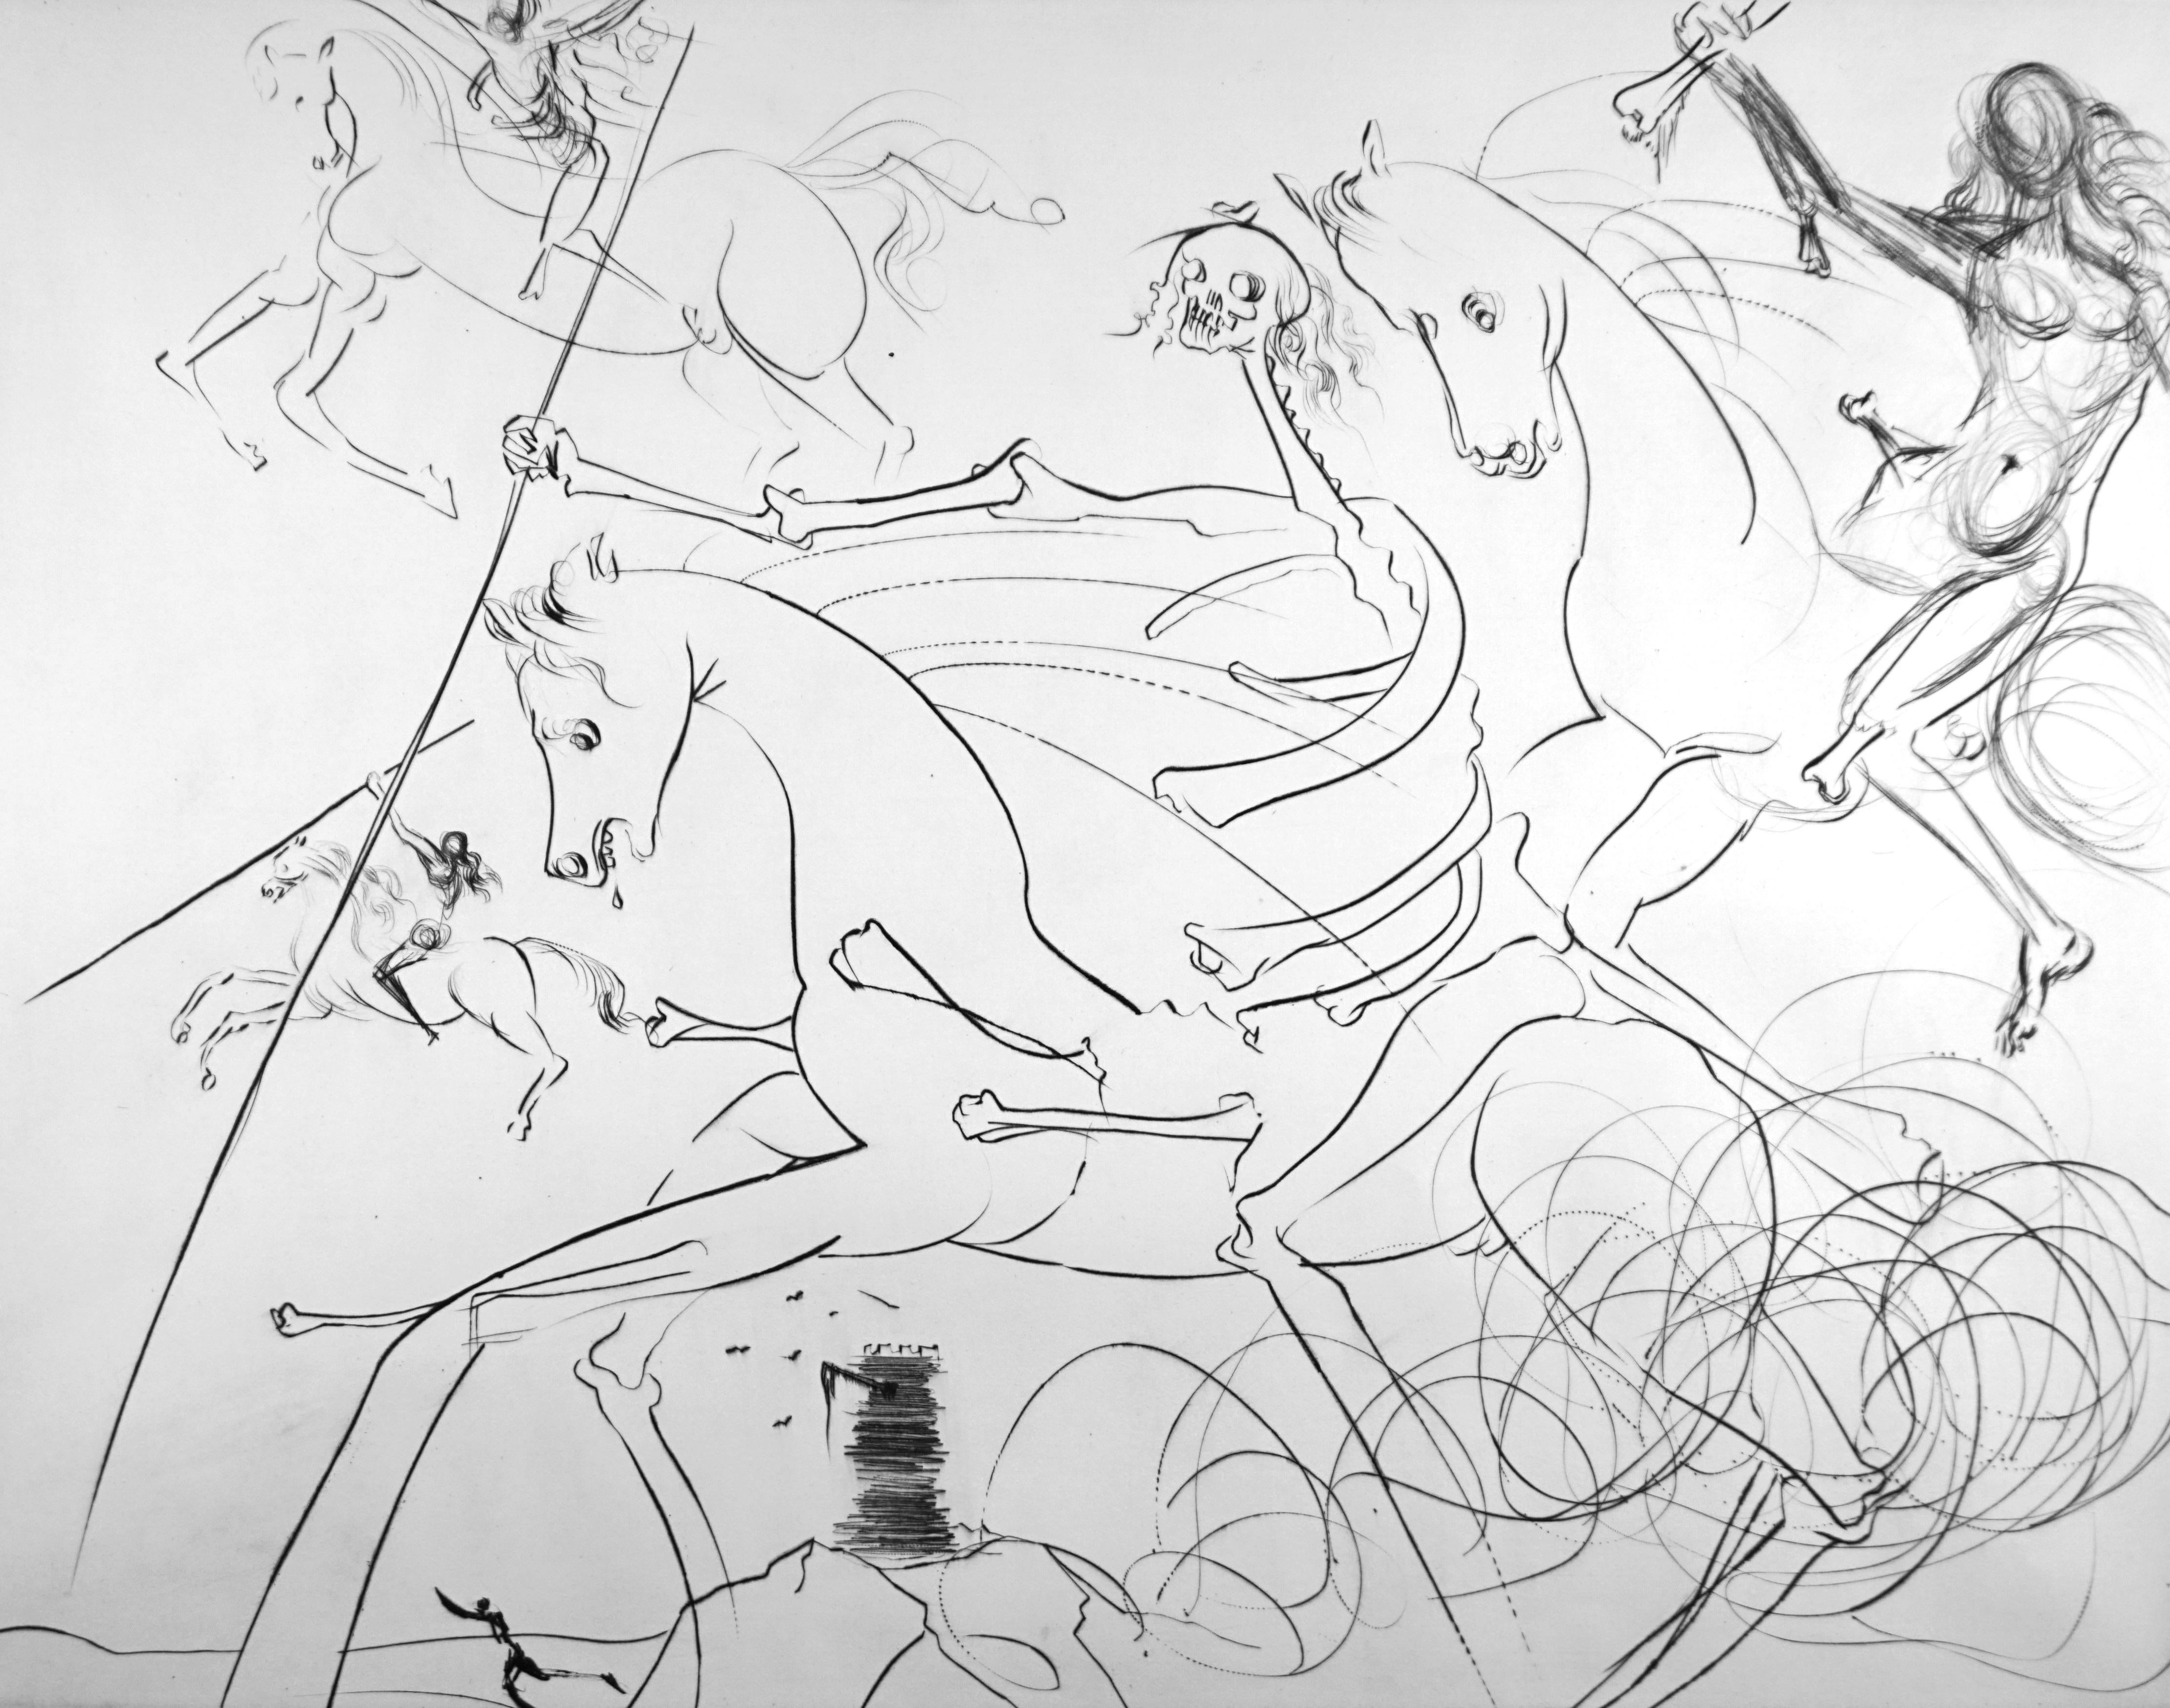 Apokalyptische Reiter ( Apokalyptischer Reiter) – Print von Salvador Dalí